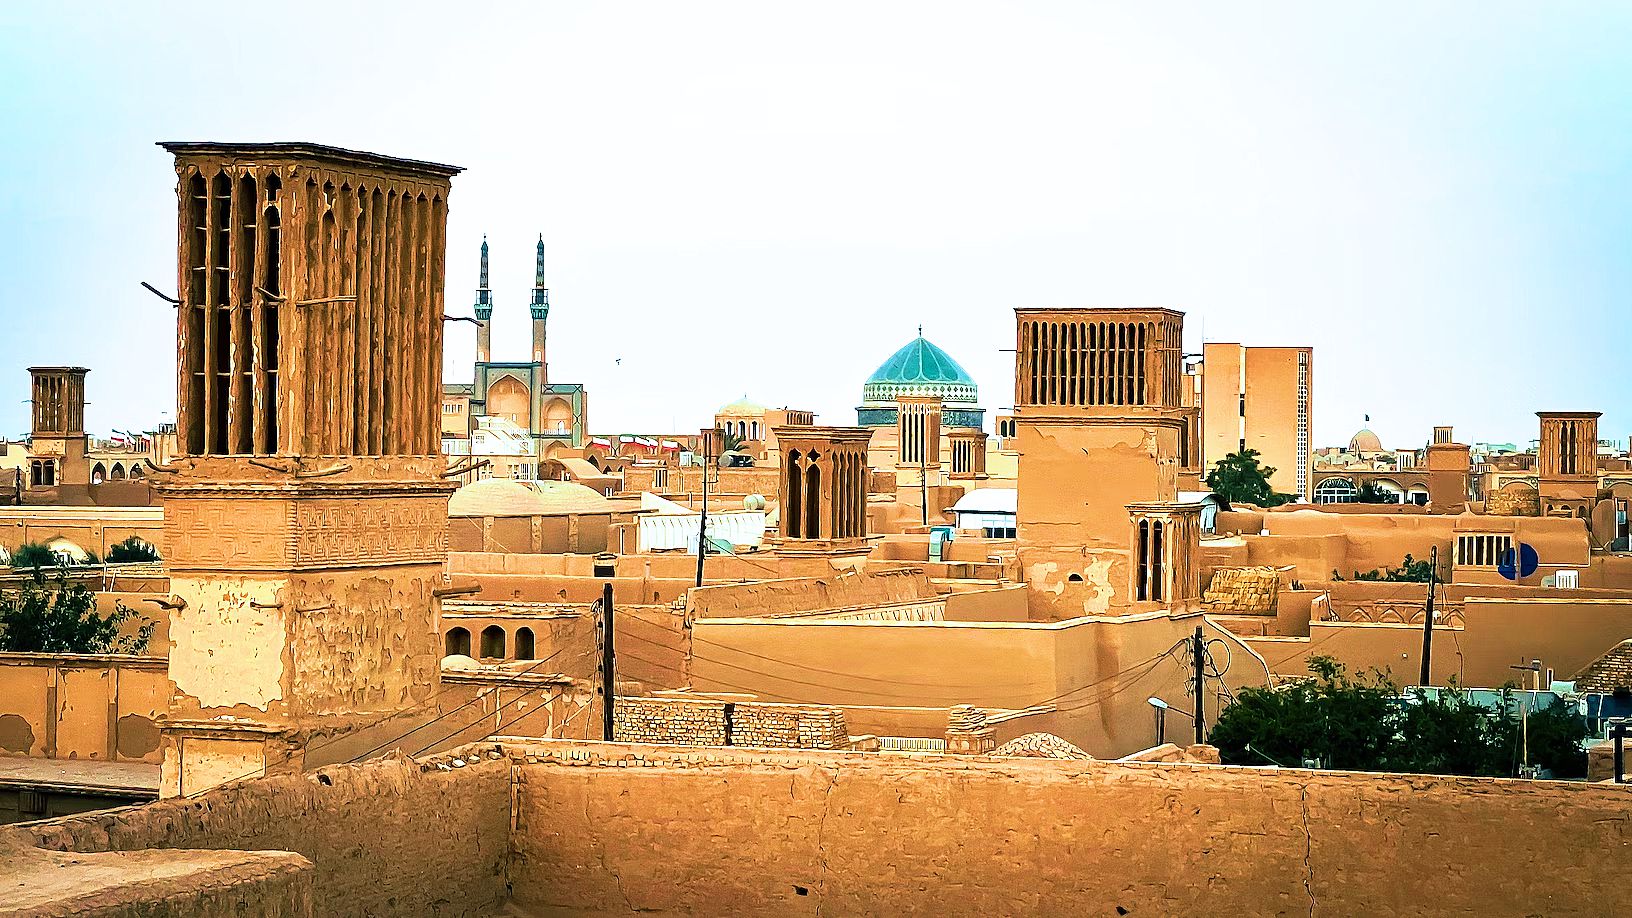  Tháp đón gió - tuyệt tác kiến trúc của thành phố sa mạc Yazd  - Ảnh 1.